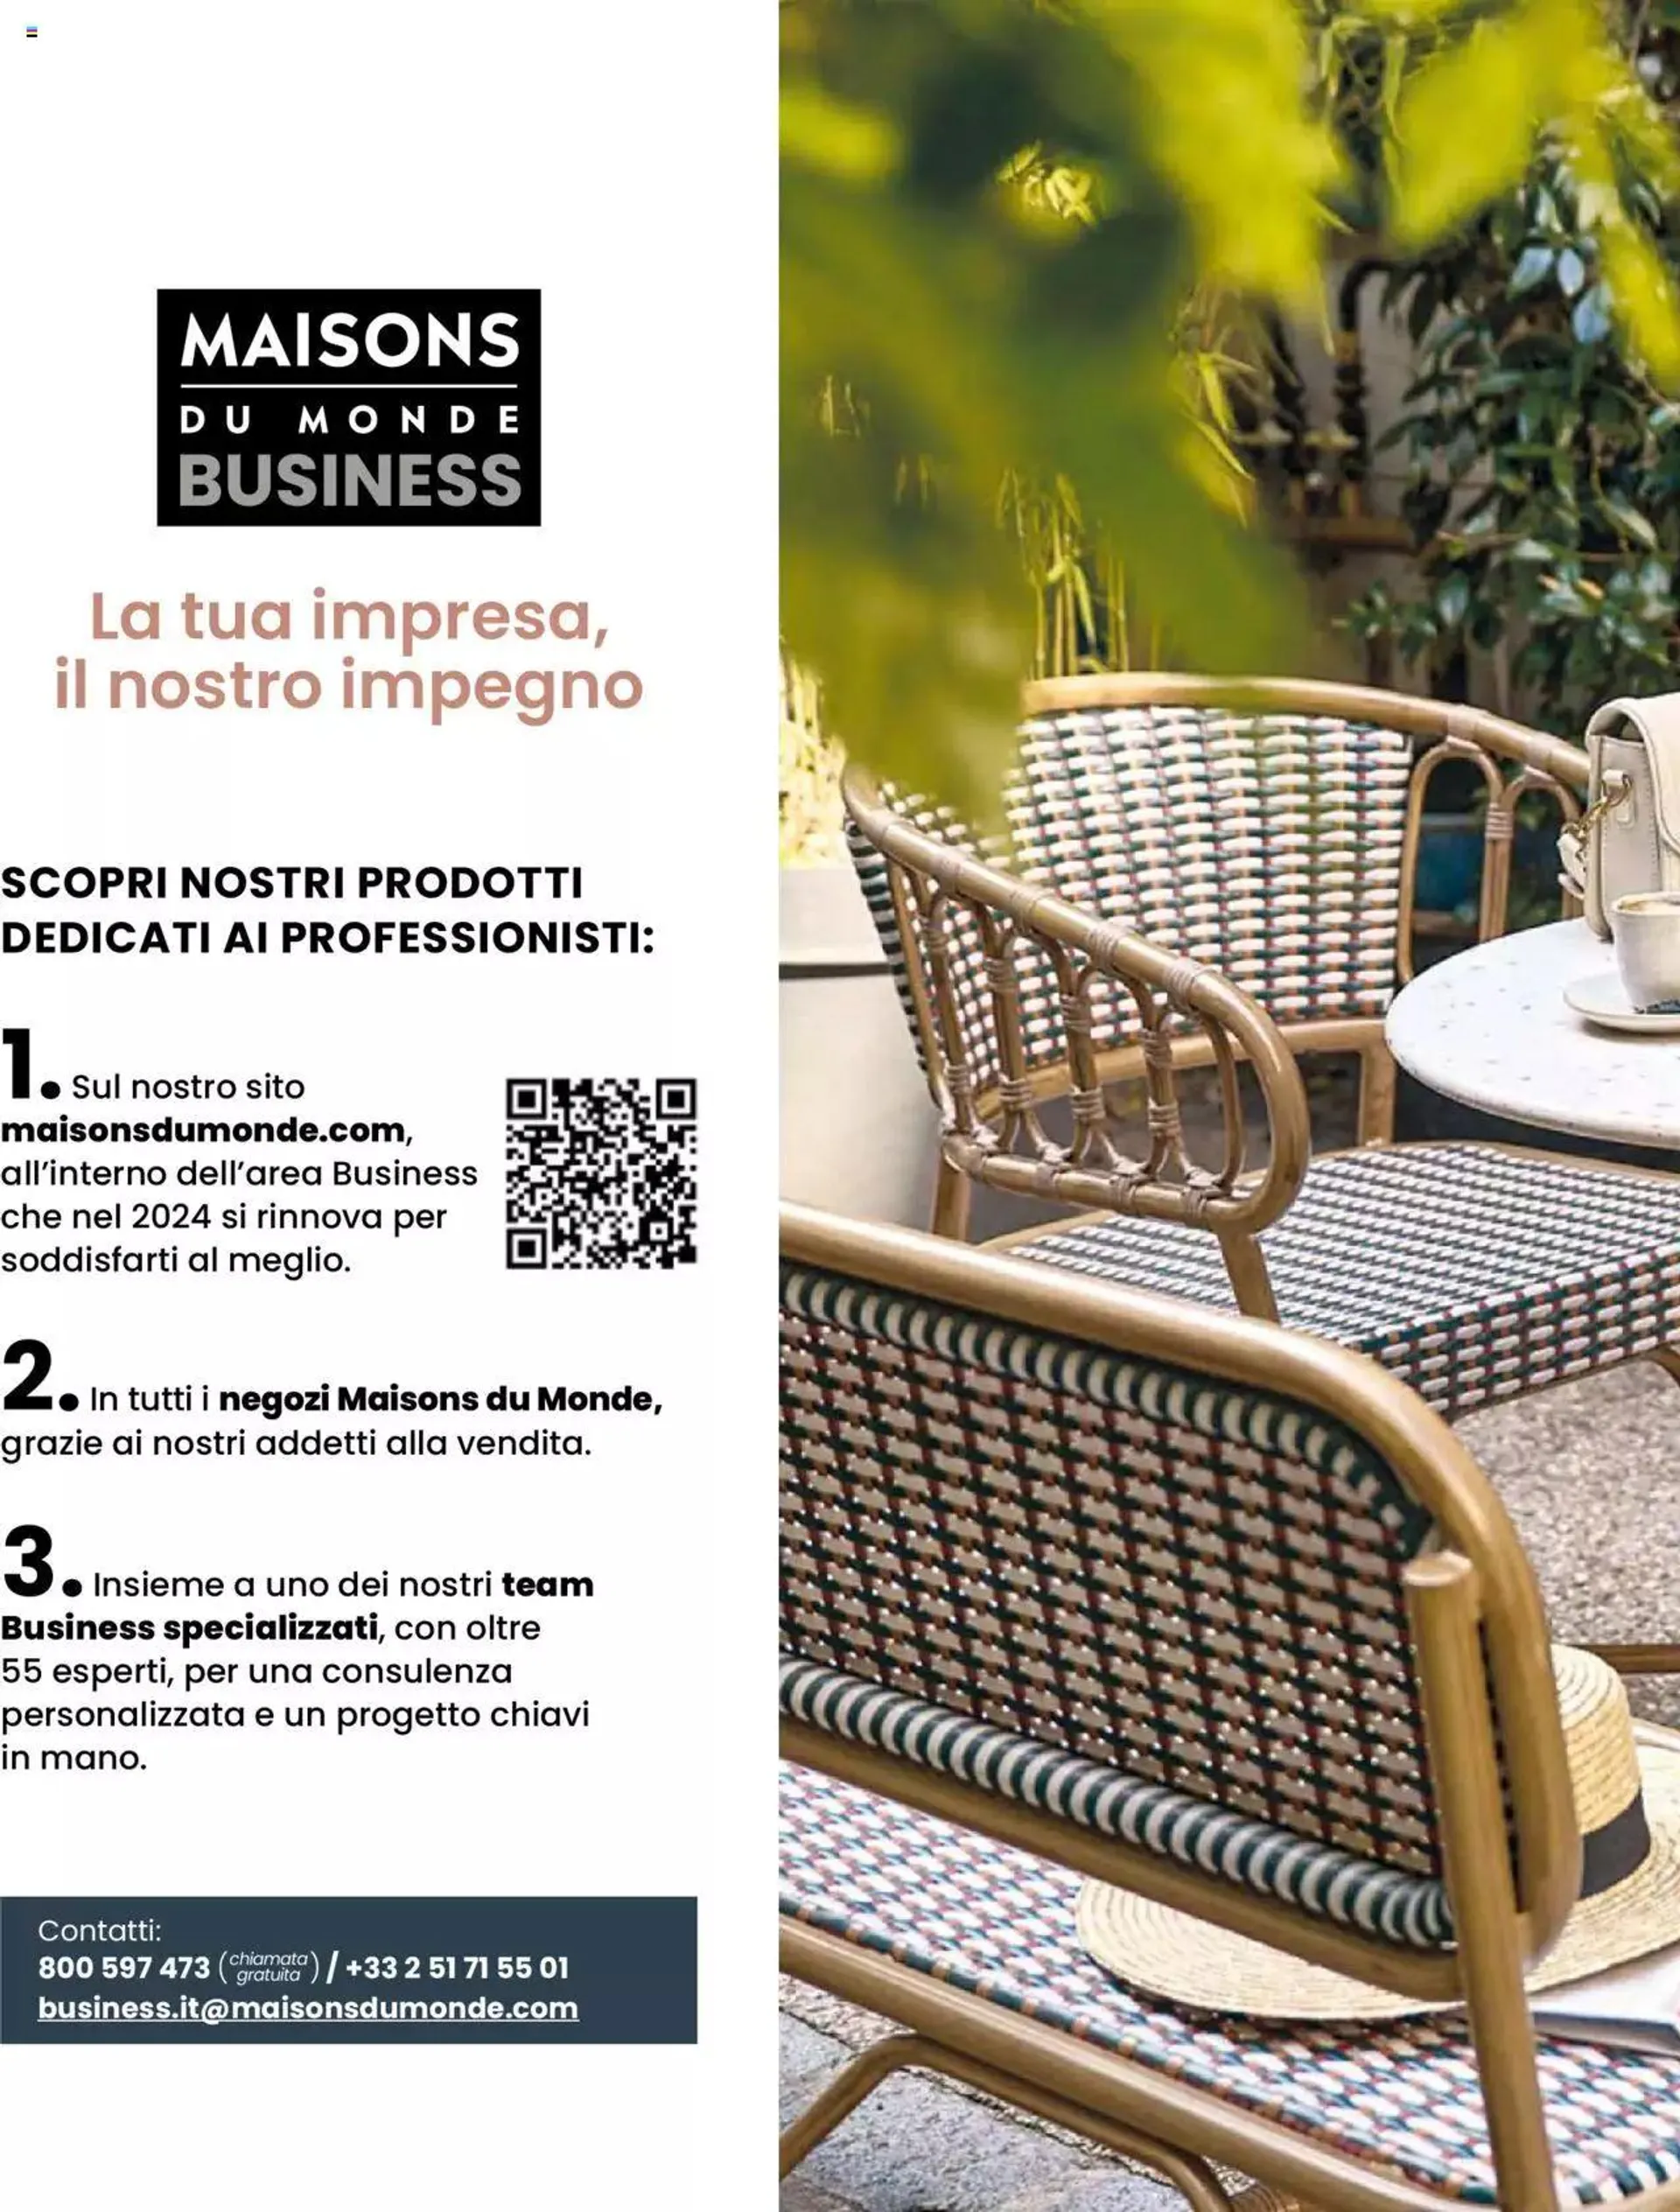 Maisons du Monde - Catalogo Business da 1 marzo a 31 dicembre di 2024 - Pagina del volantino 2